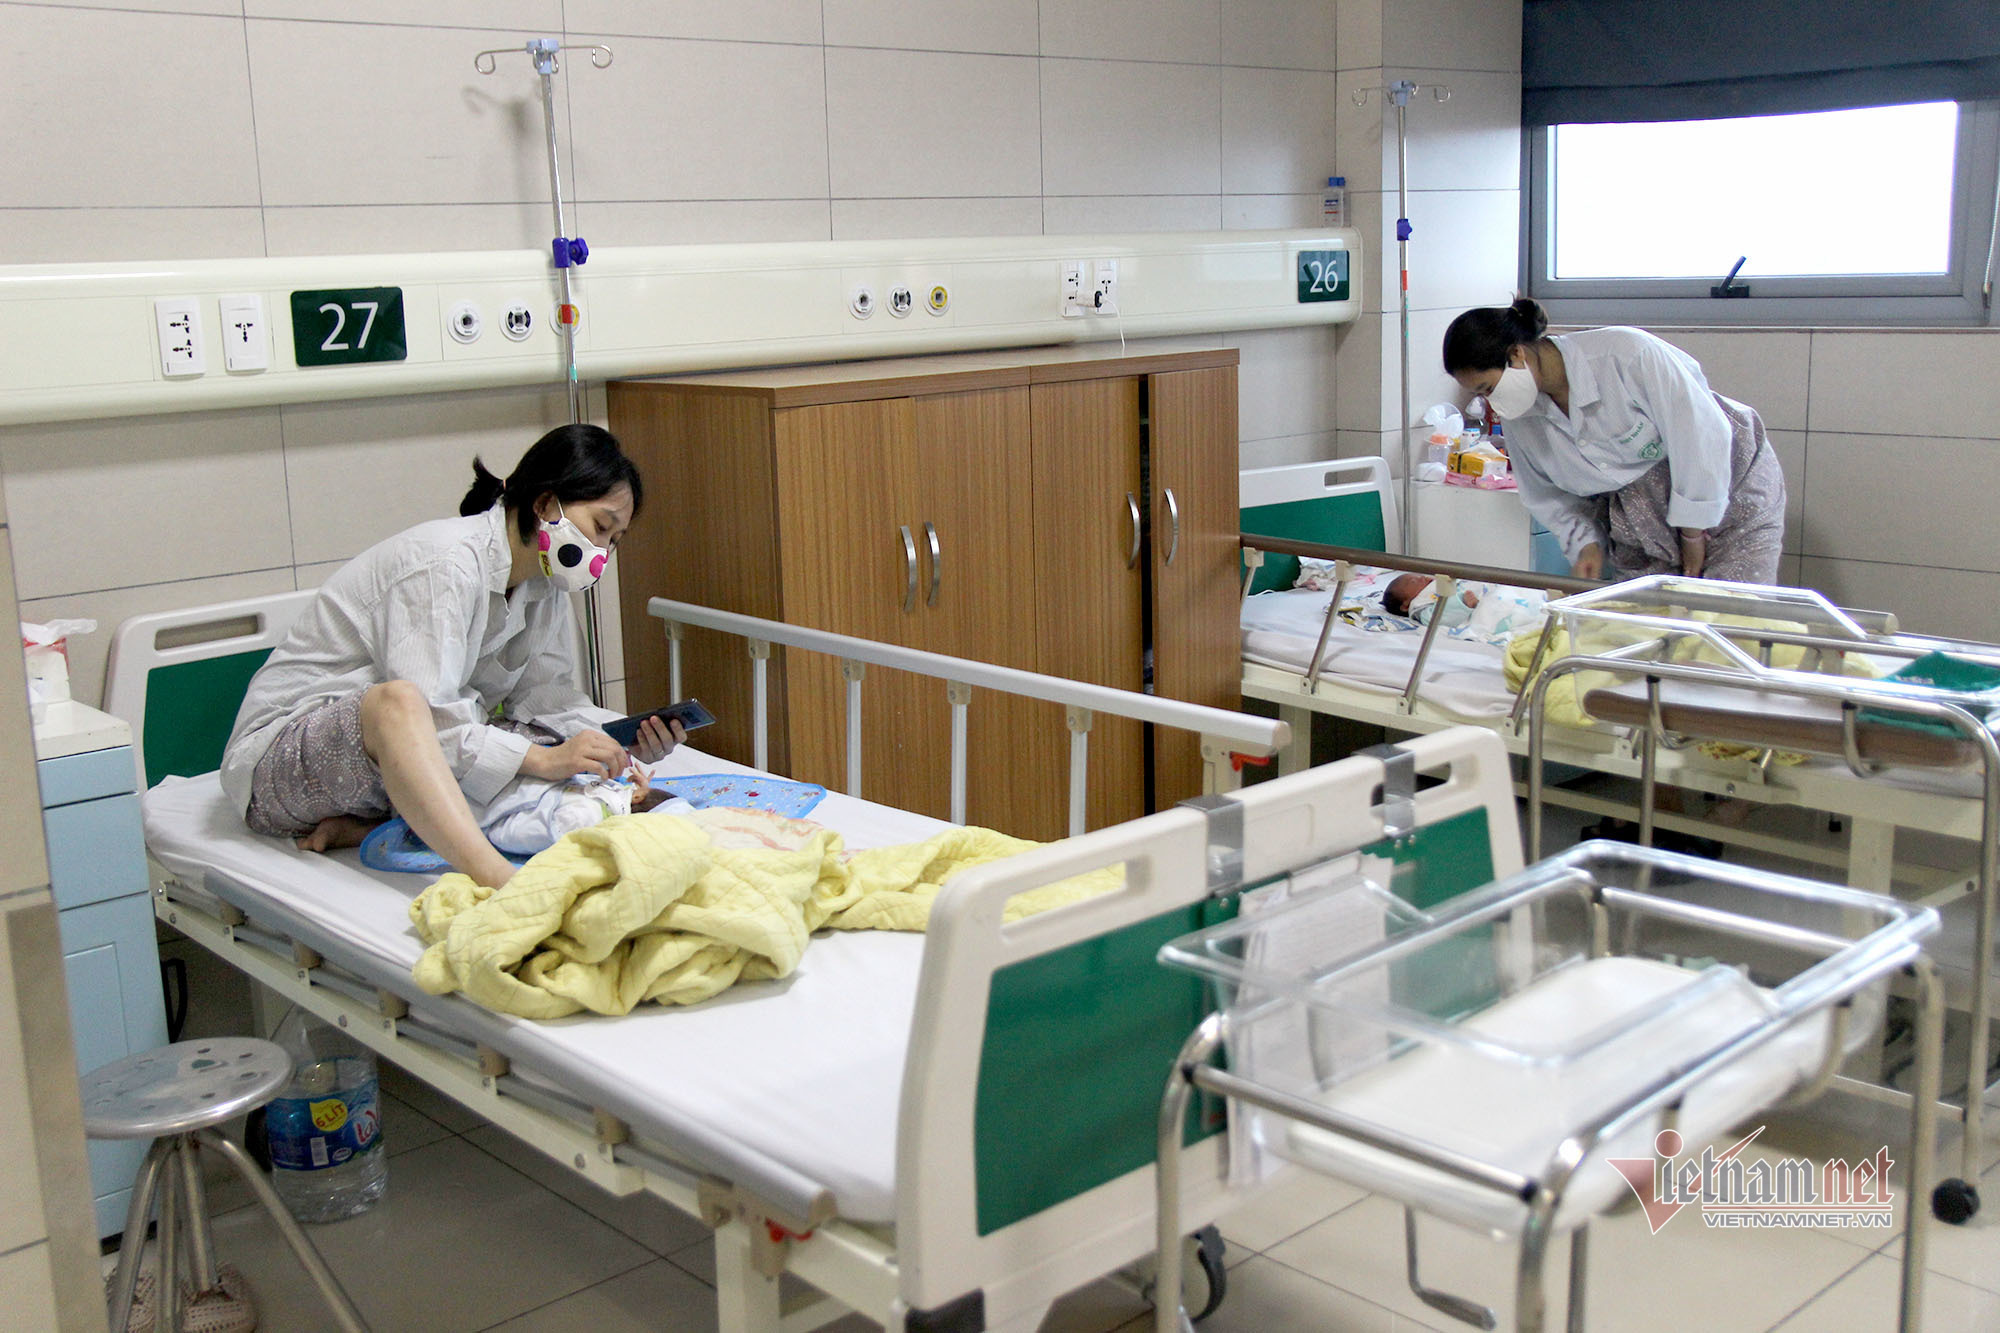 10 bệnh viện sản uy tín tại Hà Nội được nhiều mẹ tin tưởng lựa chọn cho hành trình mang thai và sinh con - Ảnh 3.